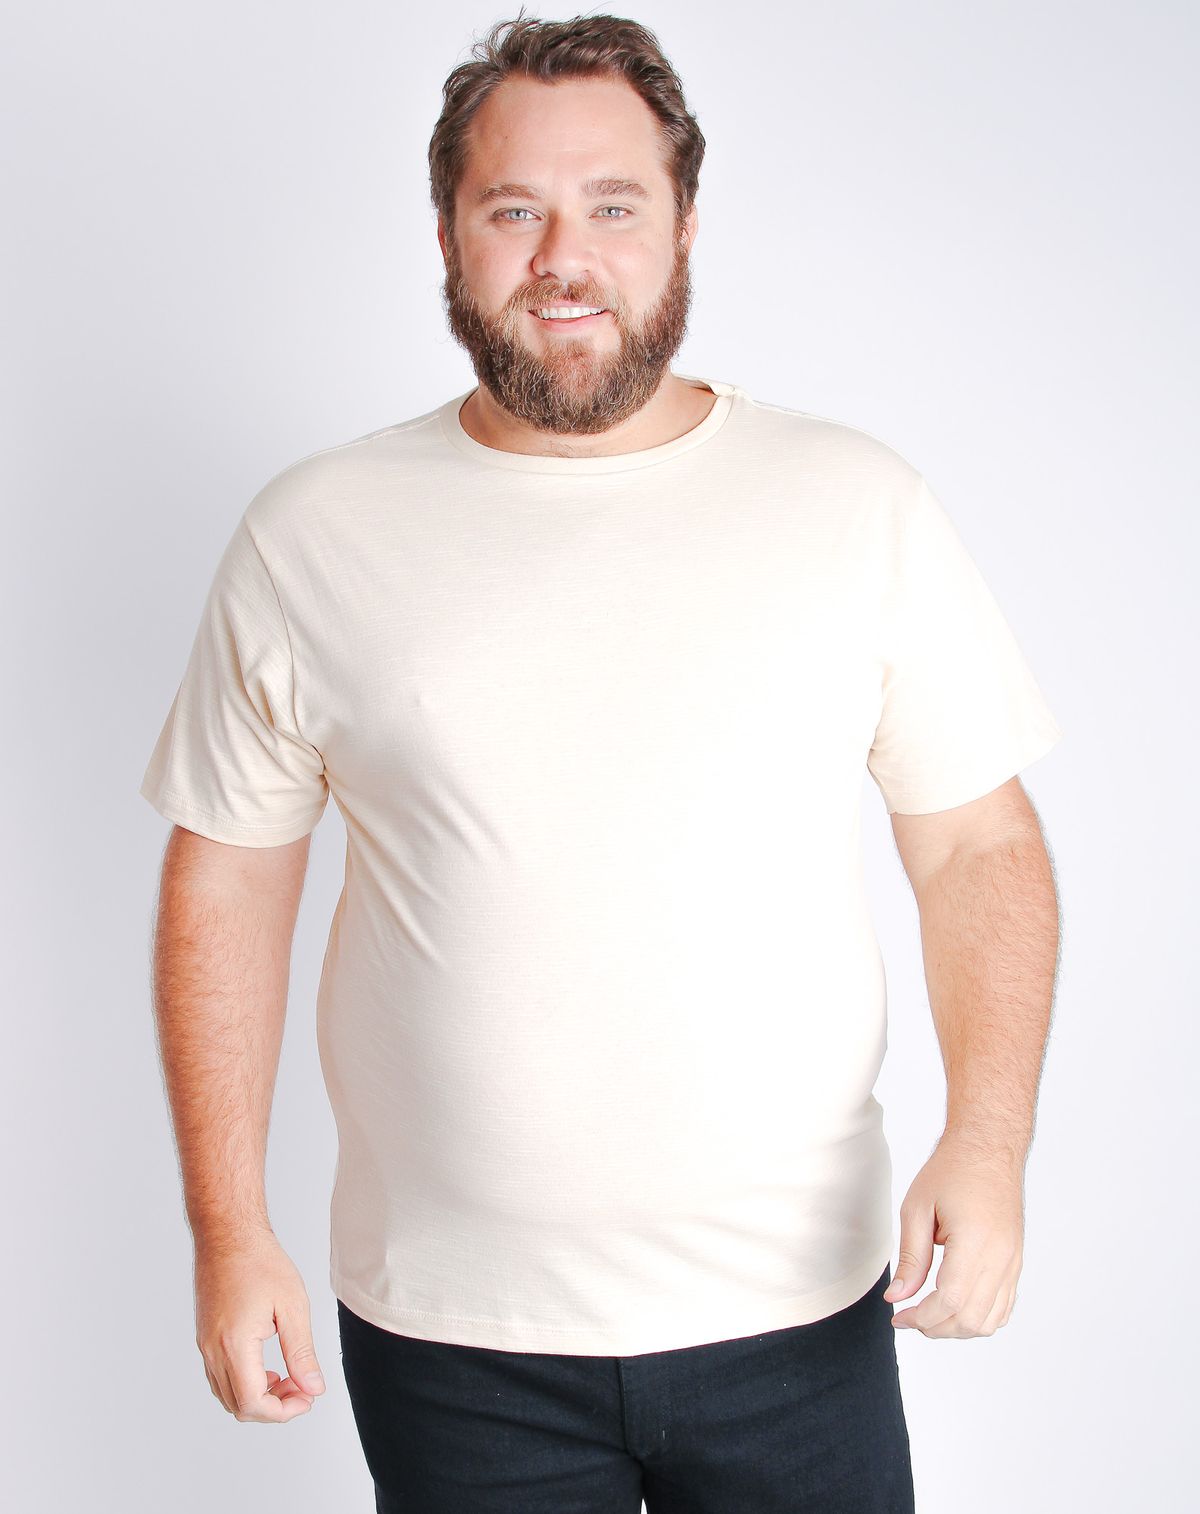 688052001-camiseta-manga-curta-masculina-plus-size-basico-off-white-g1-d6c